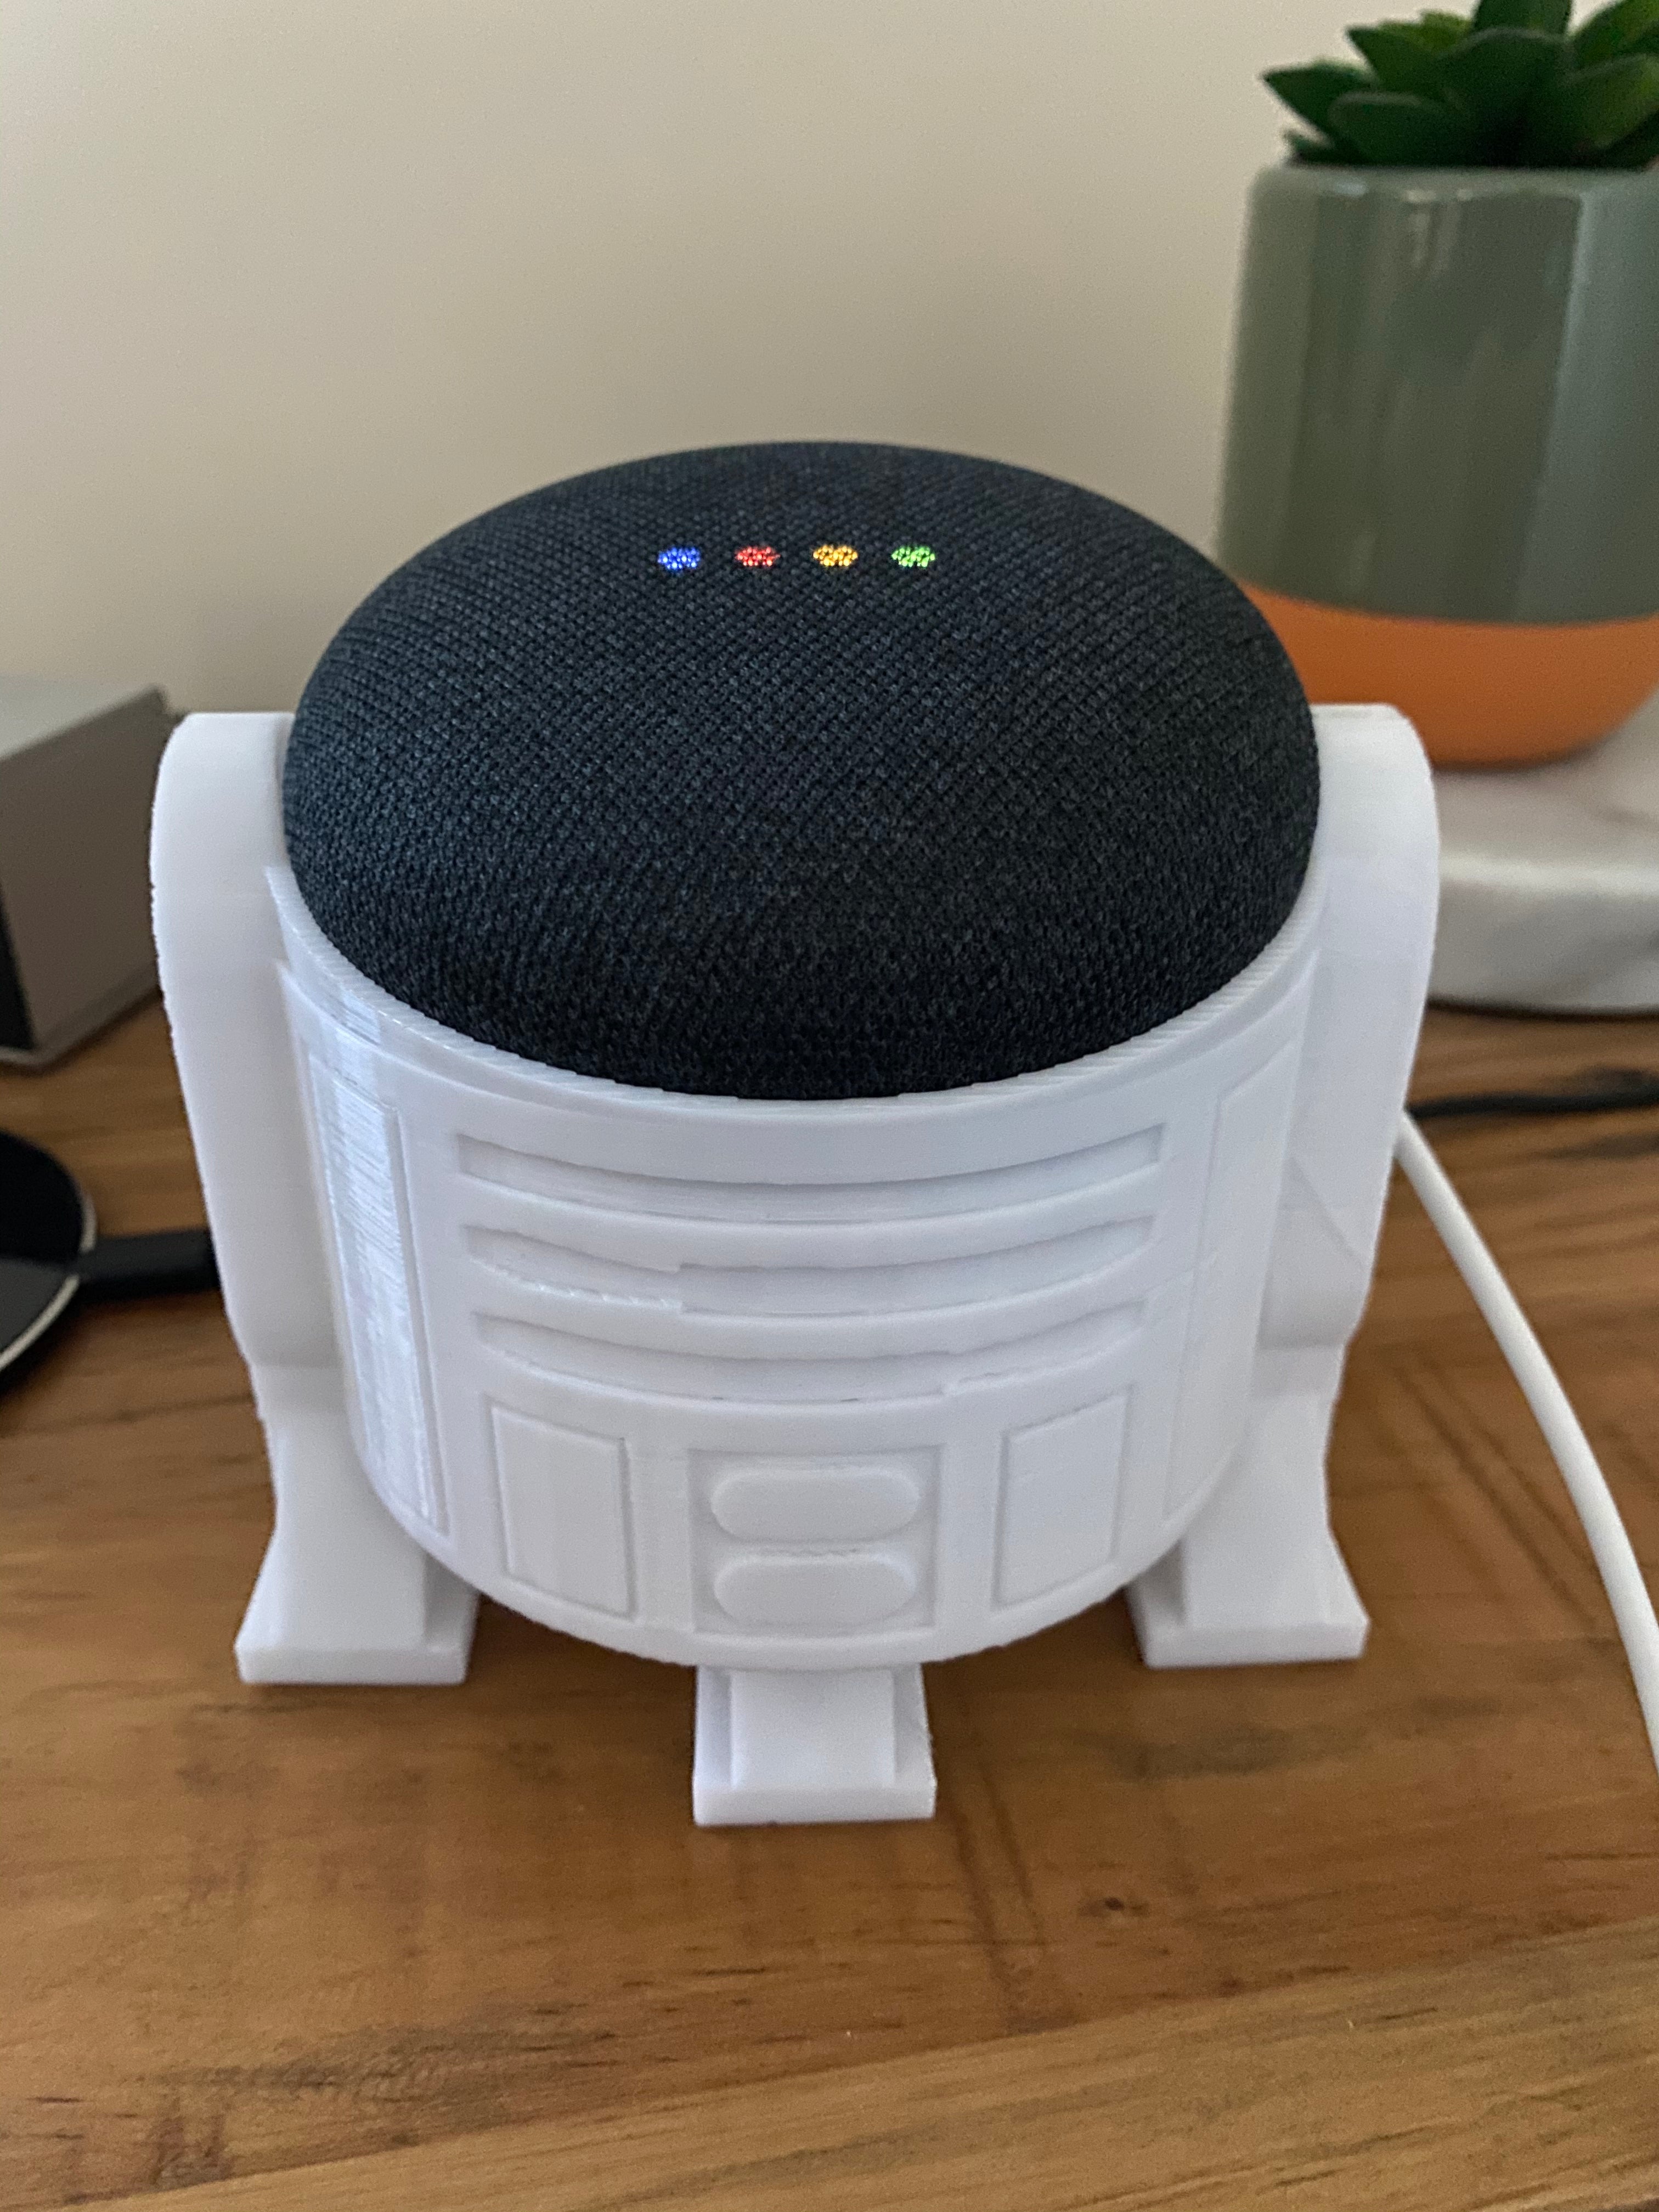 Υποδοχή R2D2 για το Google Nest Mini